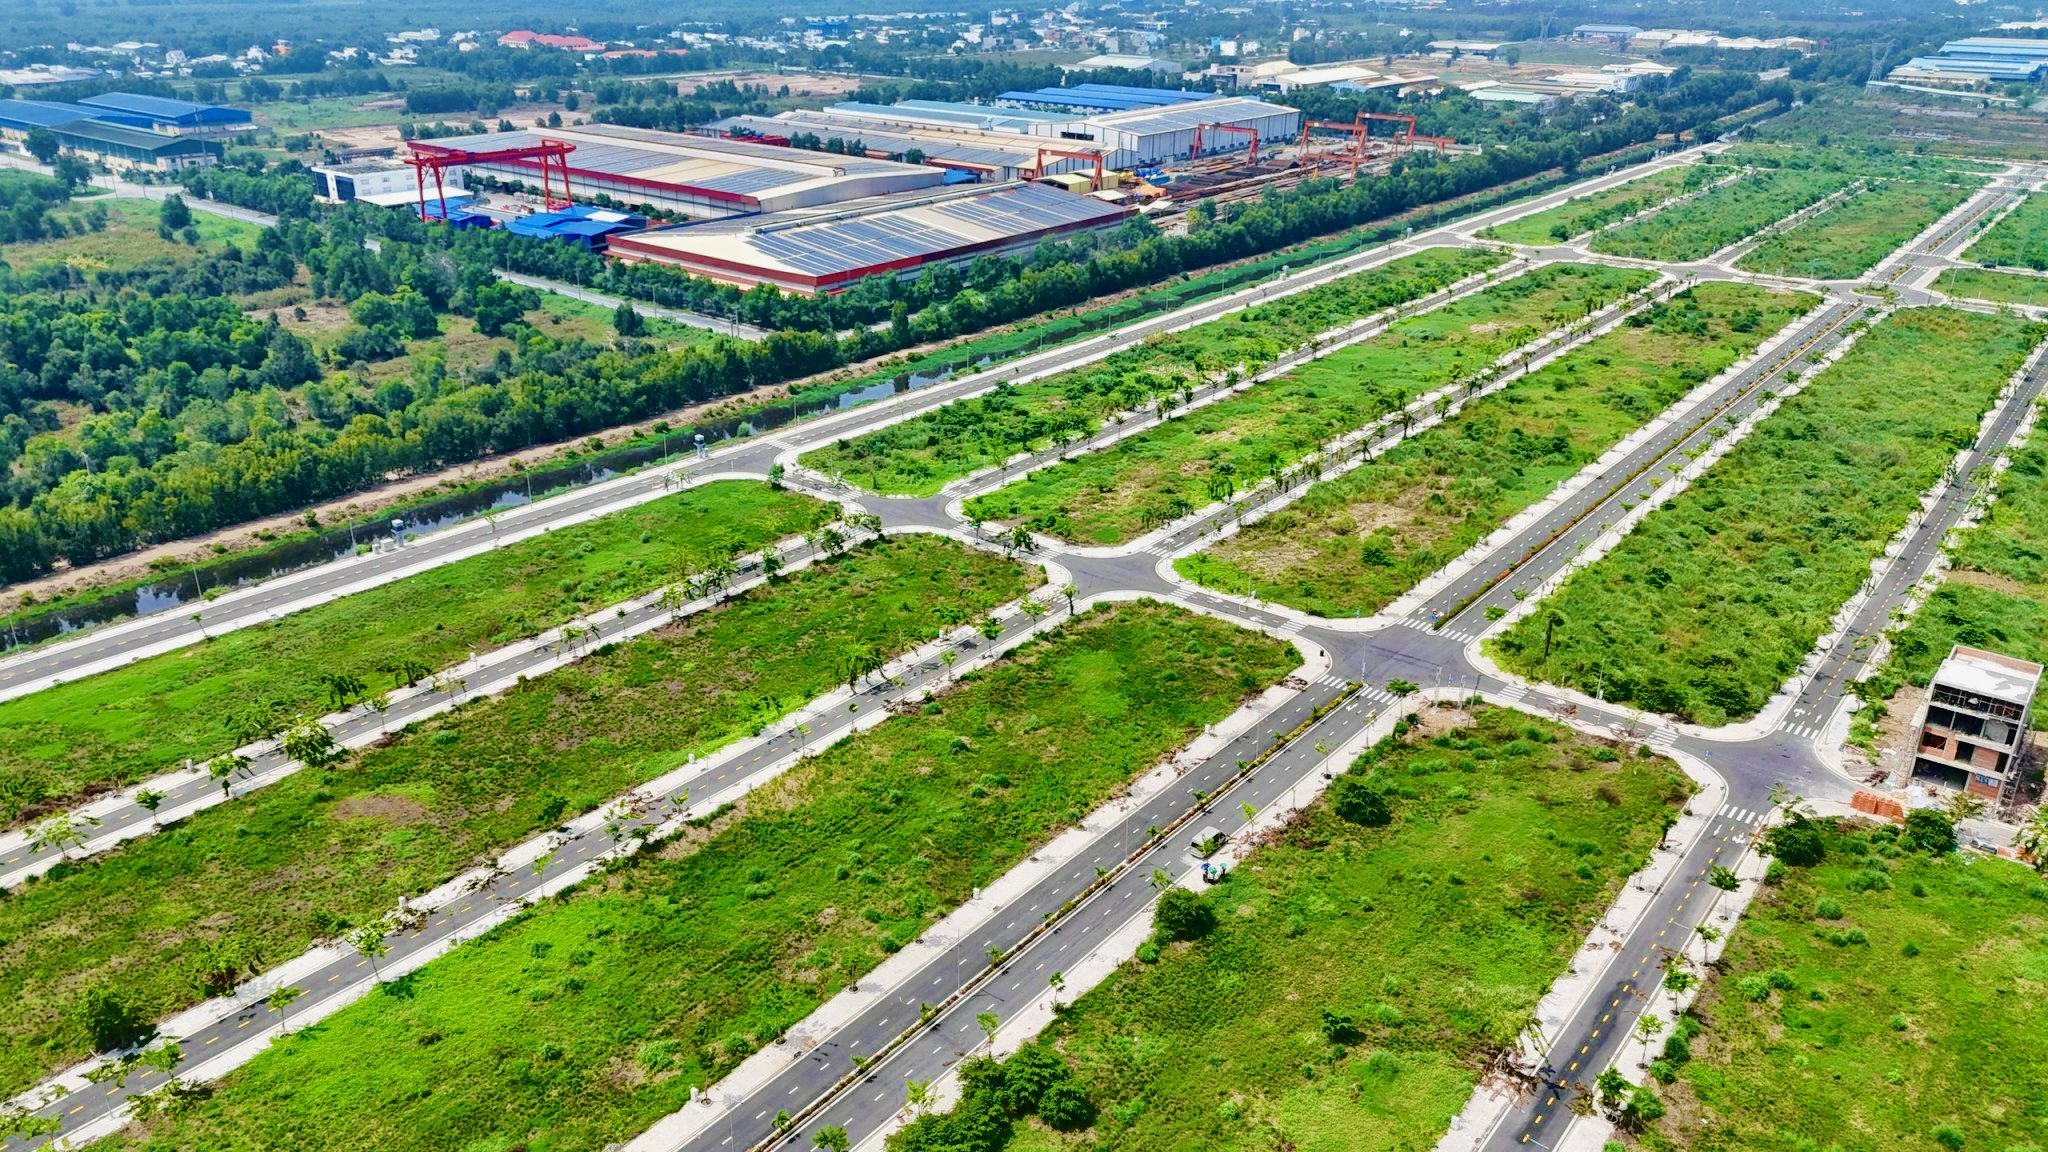 Quỹ đất giáp ranh thành phố Hồ Chí Minh nằm trong lòng khu công nghiệp. - Ảnh 2